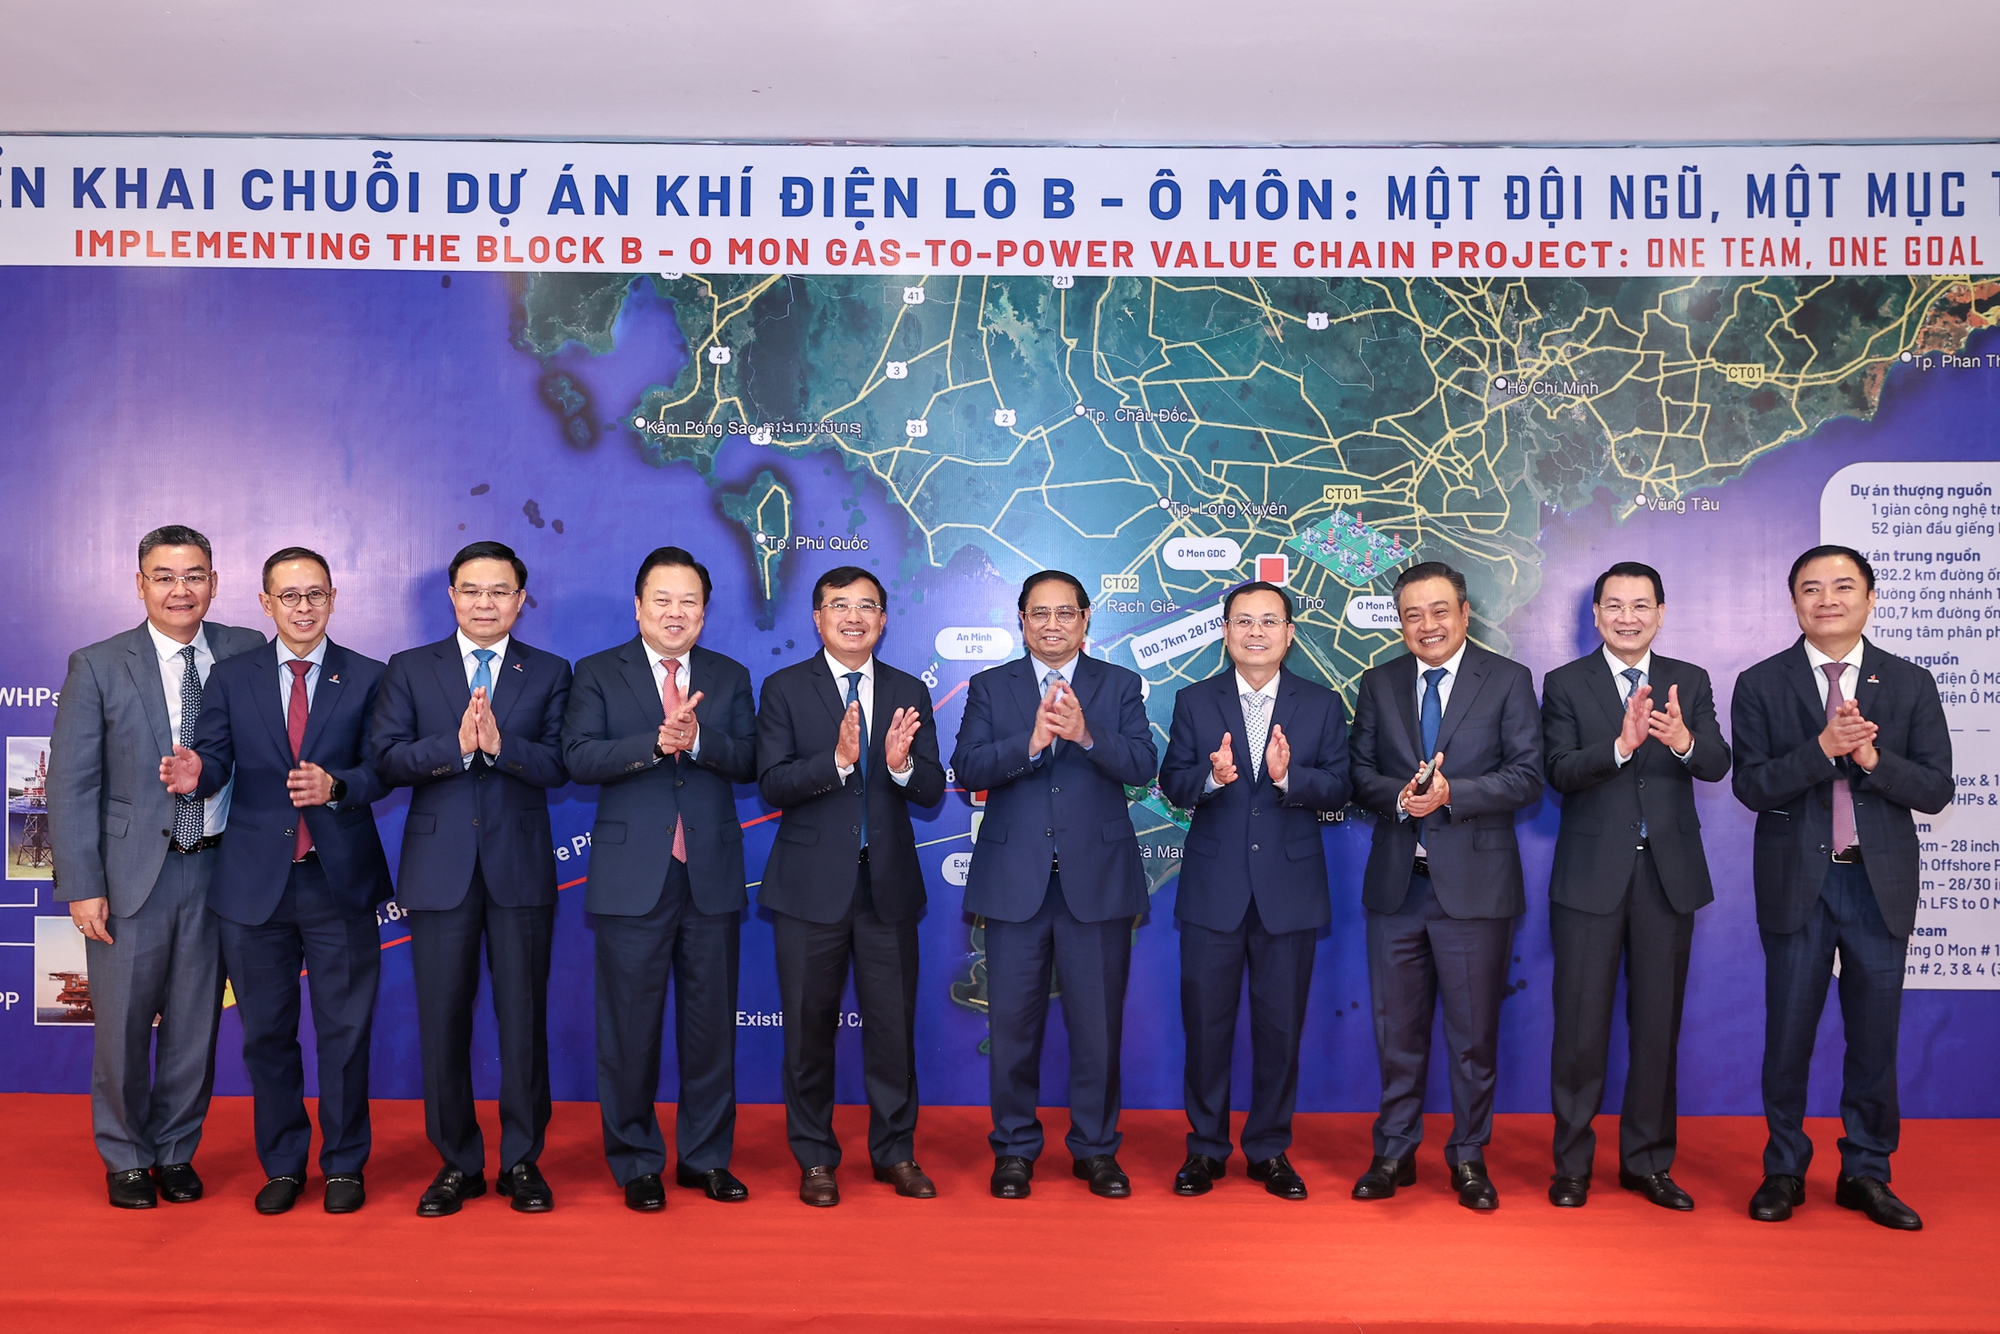 Chuỗi dự án khí điện Lô B - Ô Môn là công trình trọng điểm Nhà nước về dầu khí, là chuỗi dự án khí điện có quy mô lớn nhất của Việt Nam hiện nay - Ảnh: VGP/Nhật Bắc